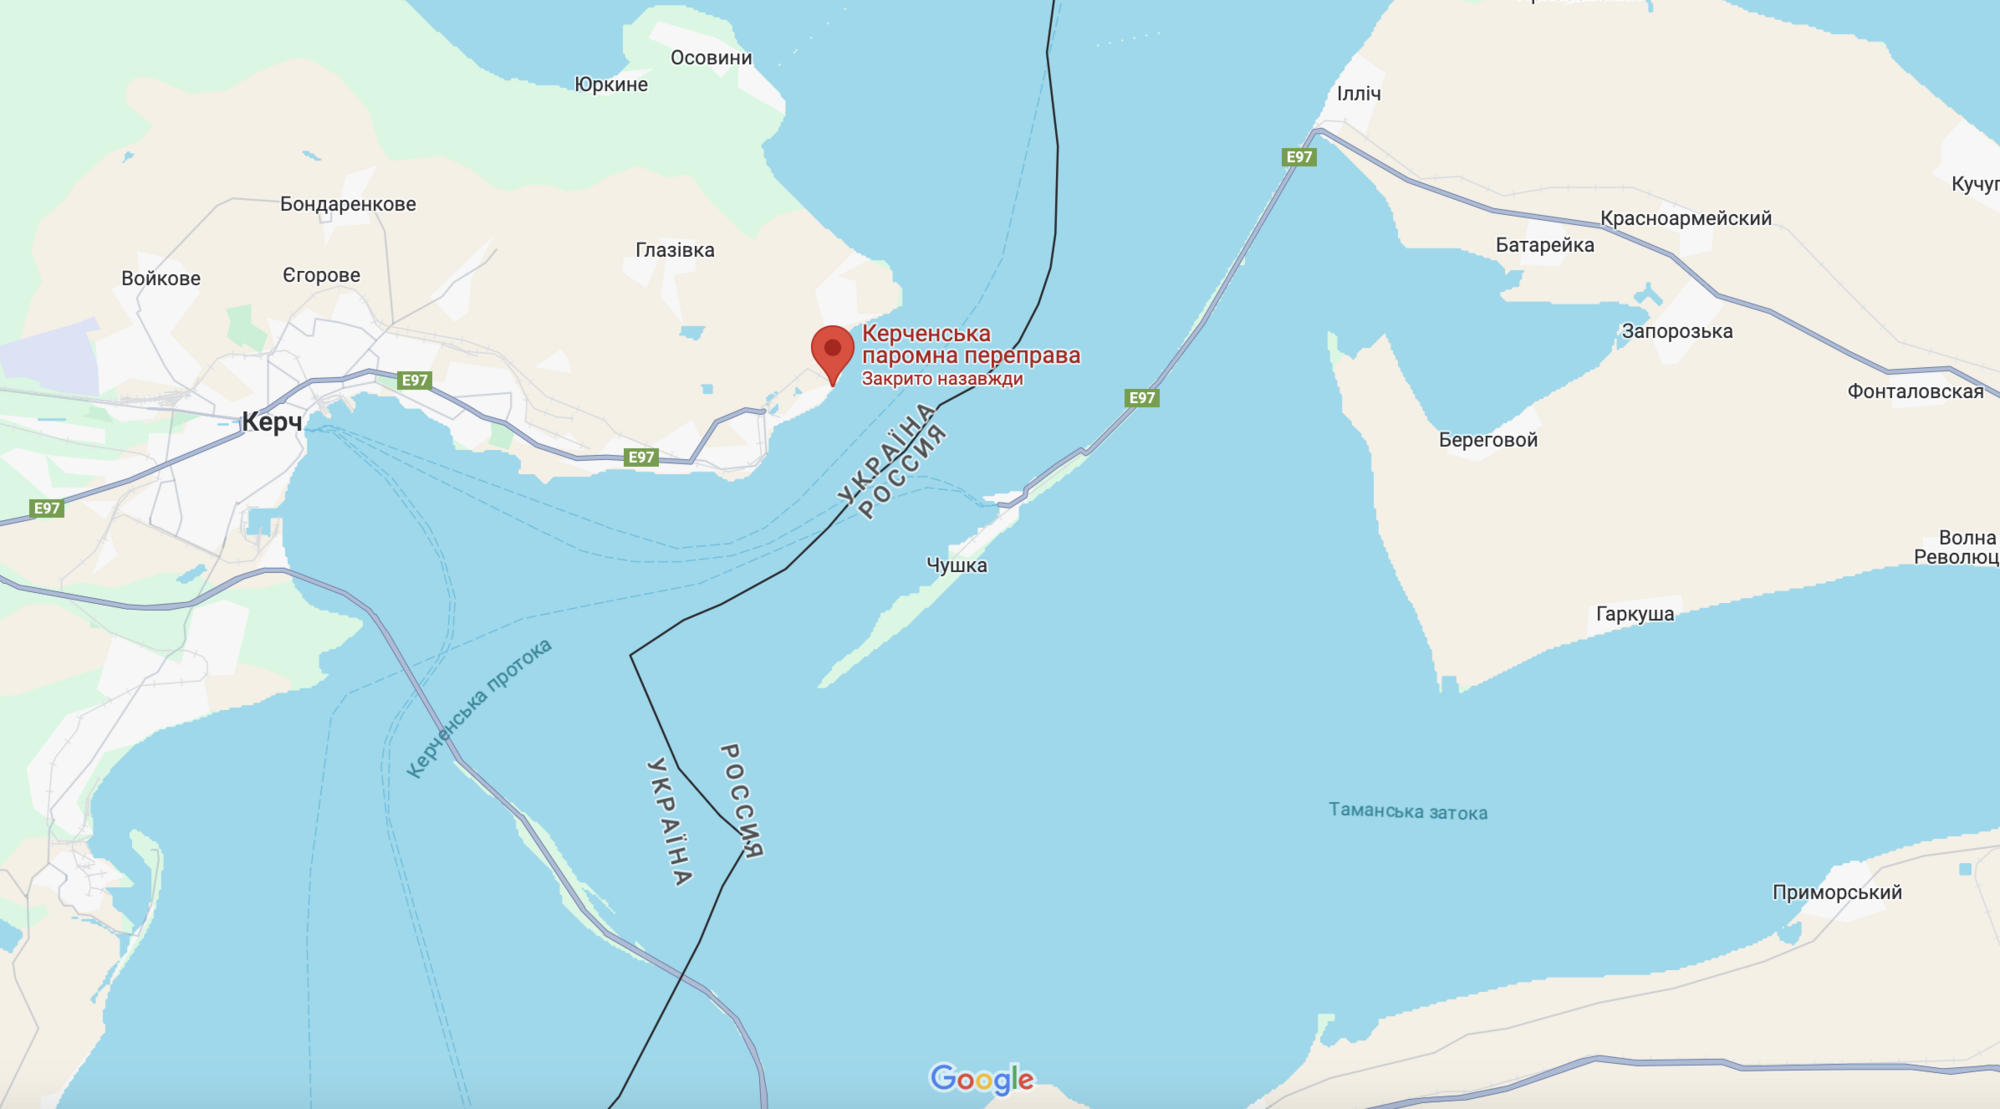 "Читайте технические пособия": Буданов пристыдил "экспертов", утверждающих, что ATACMS не могут разрушить Крымский мост